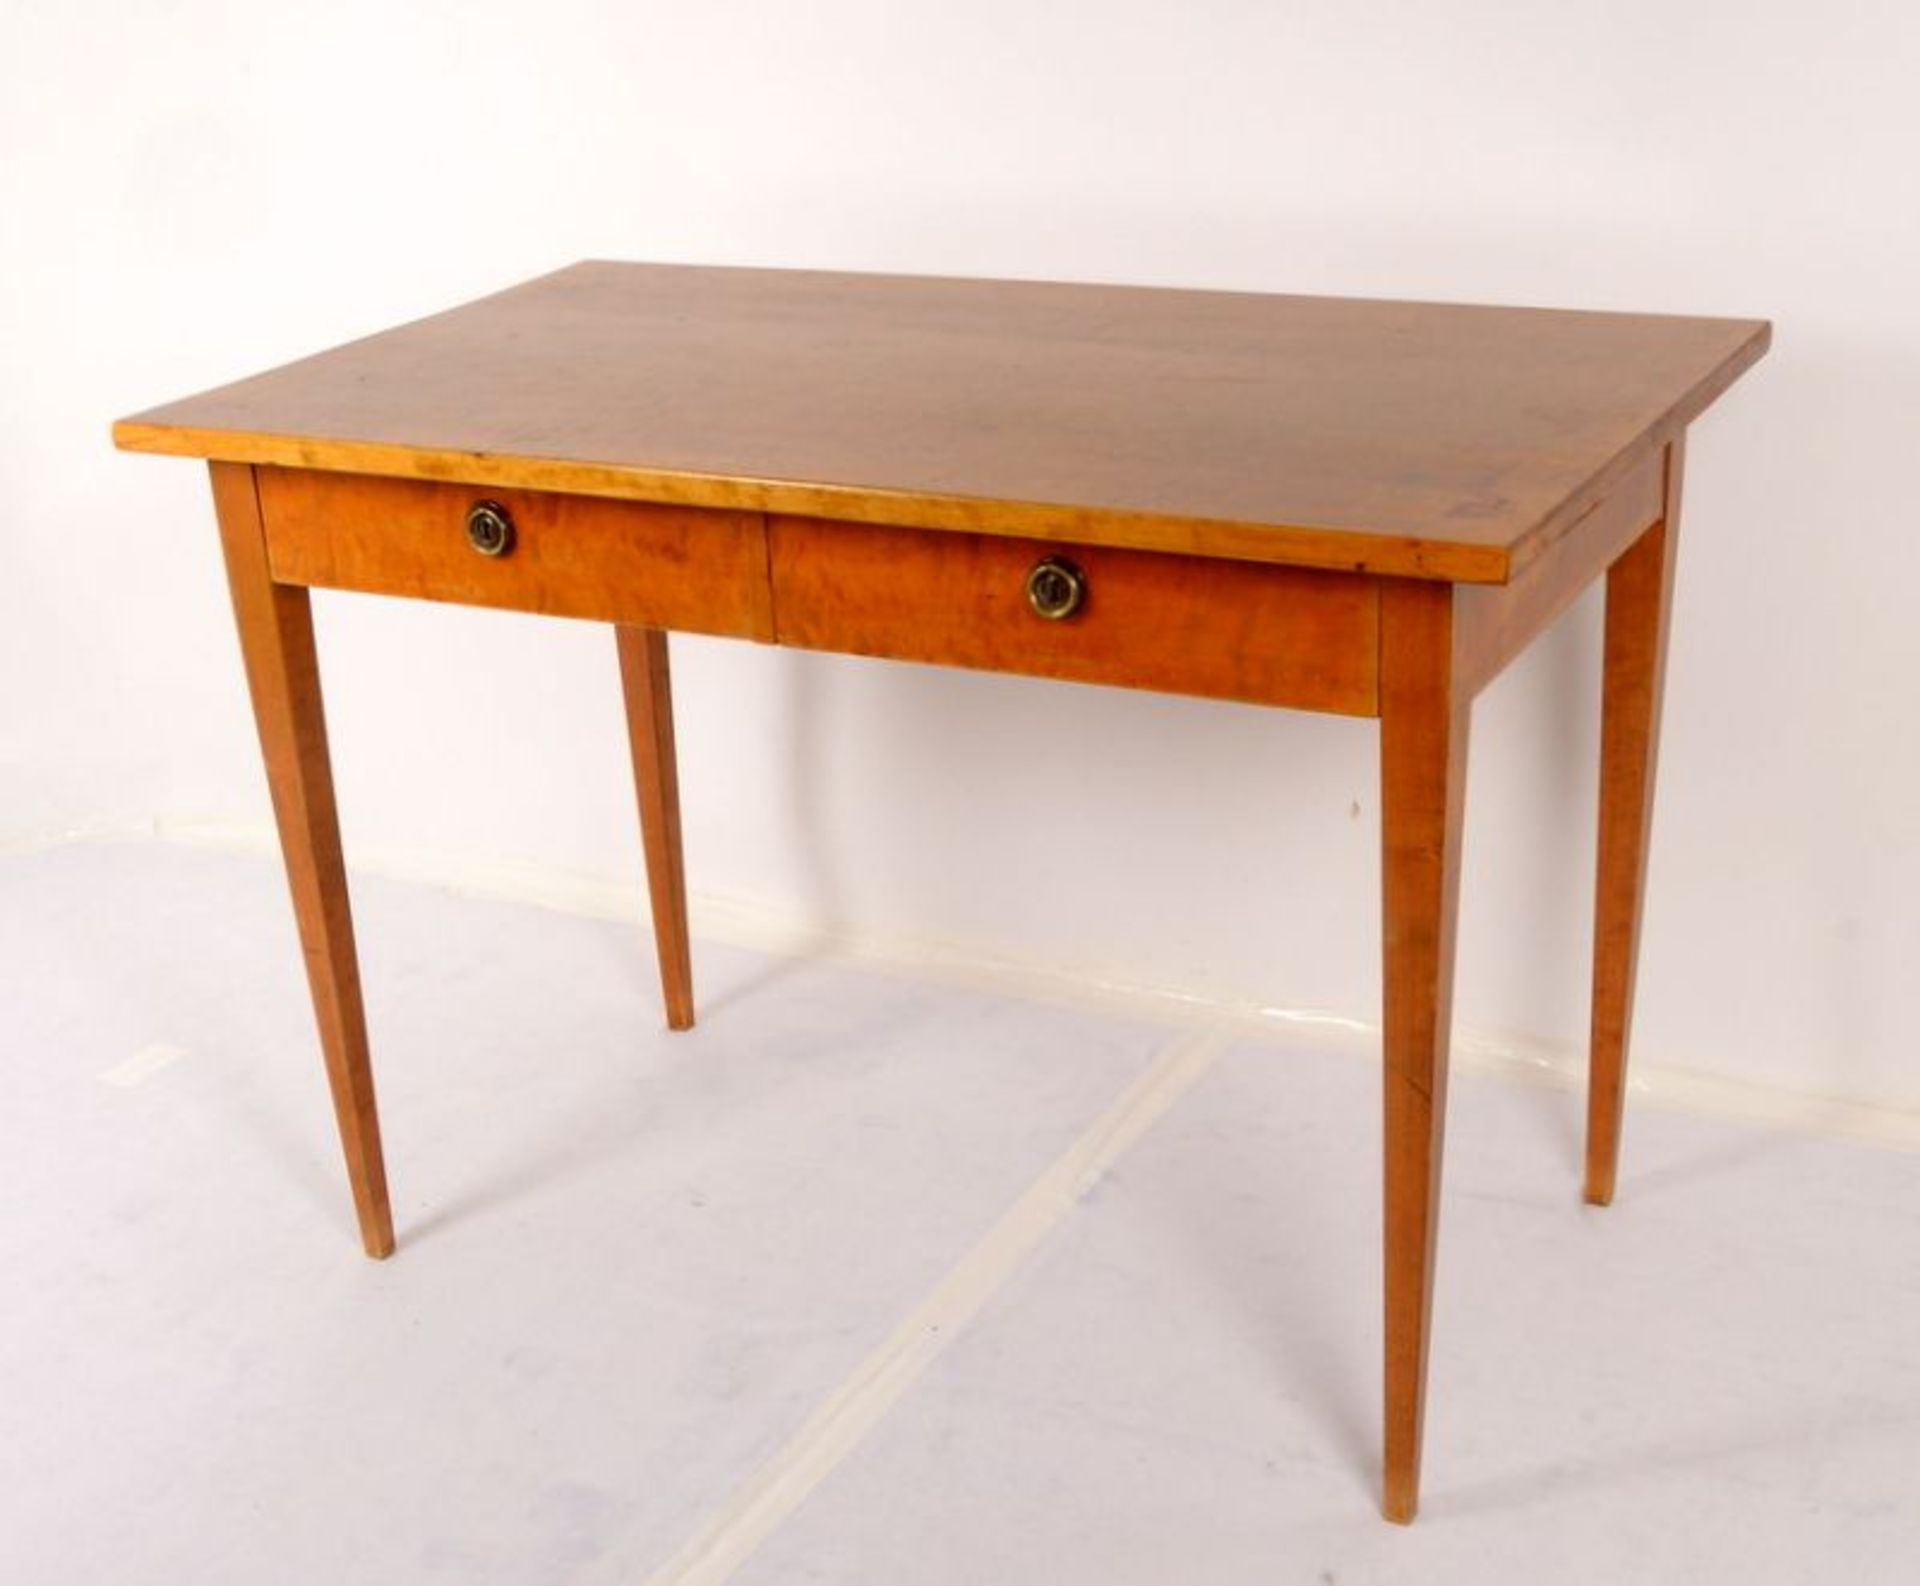 Schreibtisch, Birke, rechteckige Schreibplatte oberhalb 2x Schüben, Tisch auf konischen Beinen; - Bild 3 aus 3